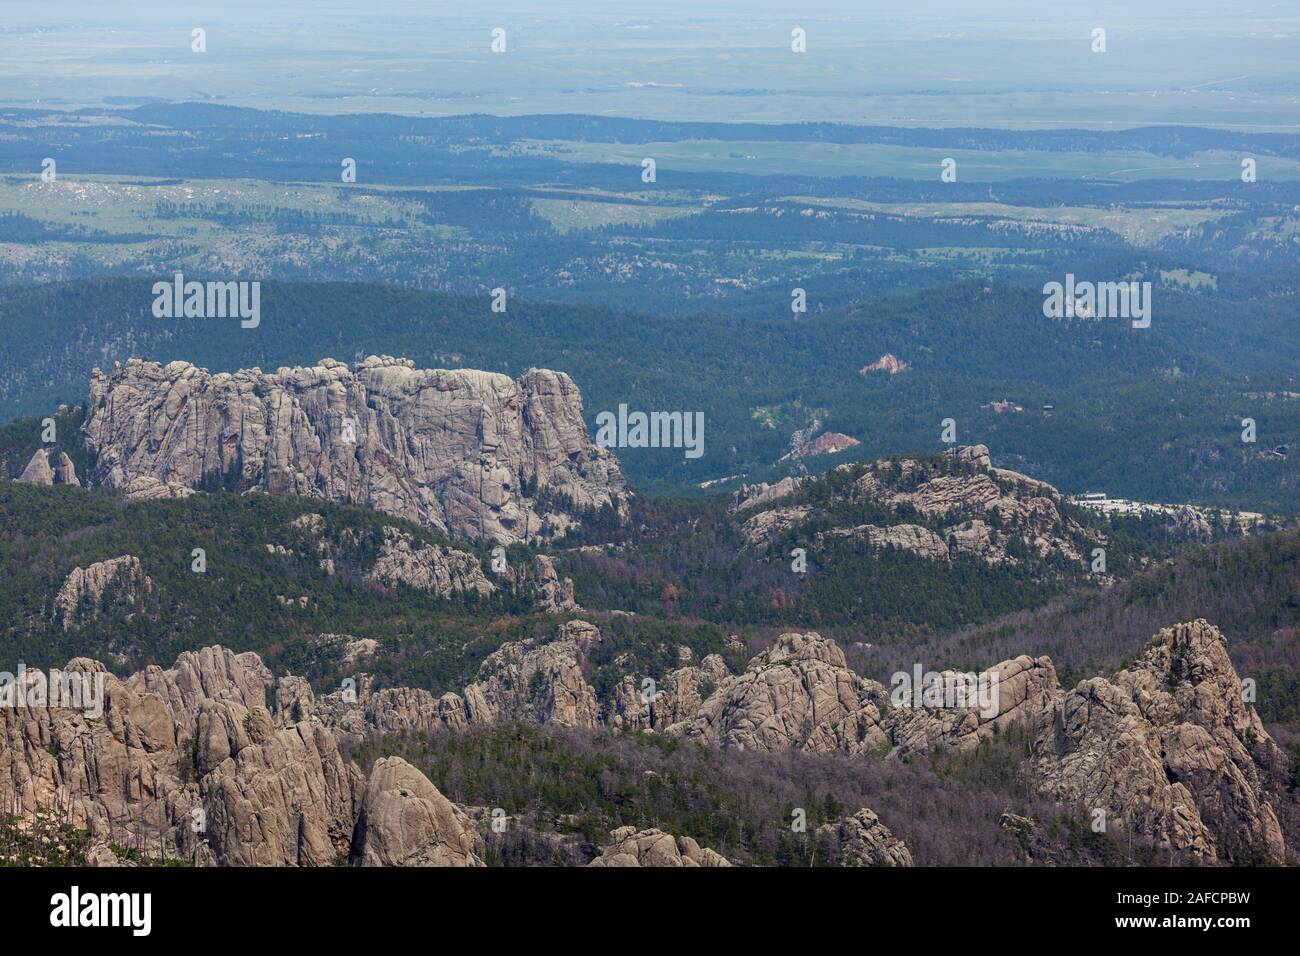 Die Rückseite der großen Rock Formation, ist der Mount Rushmore auf der linken Seite mit einem Parkplatz auf der rechten Seite wie von Black Elk Peak in Custe gesehen Stockfoto